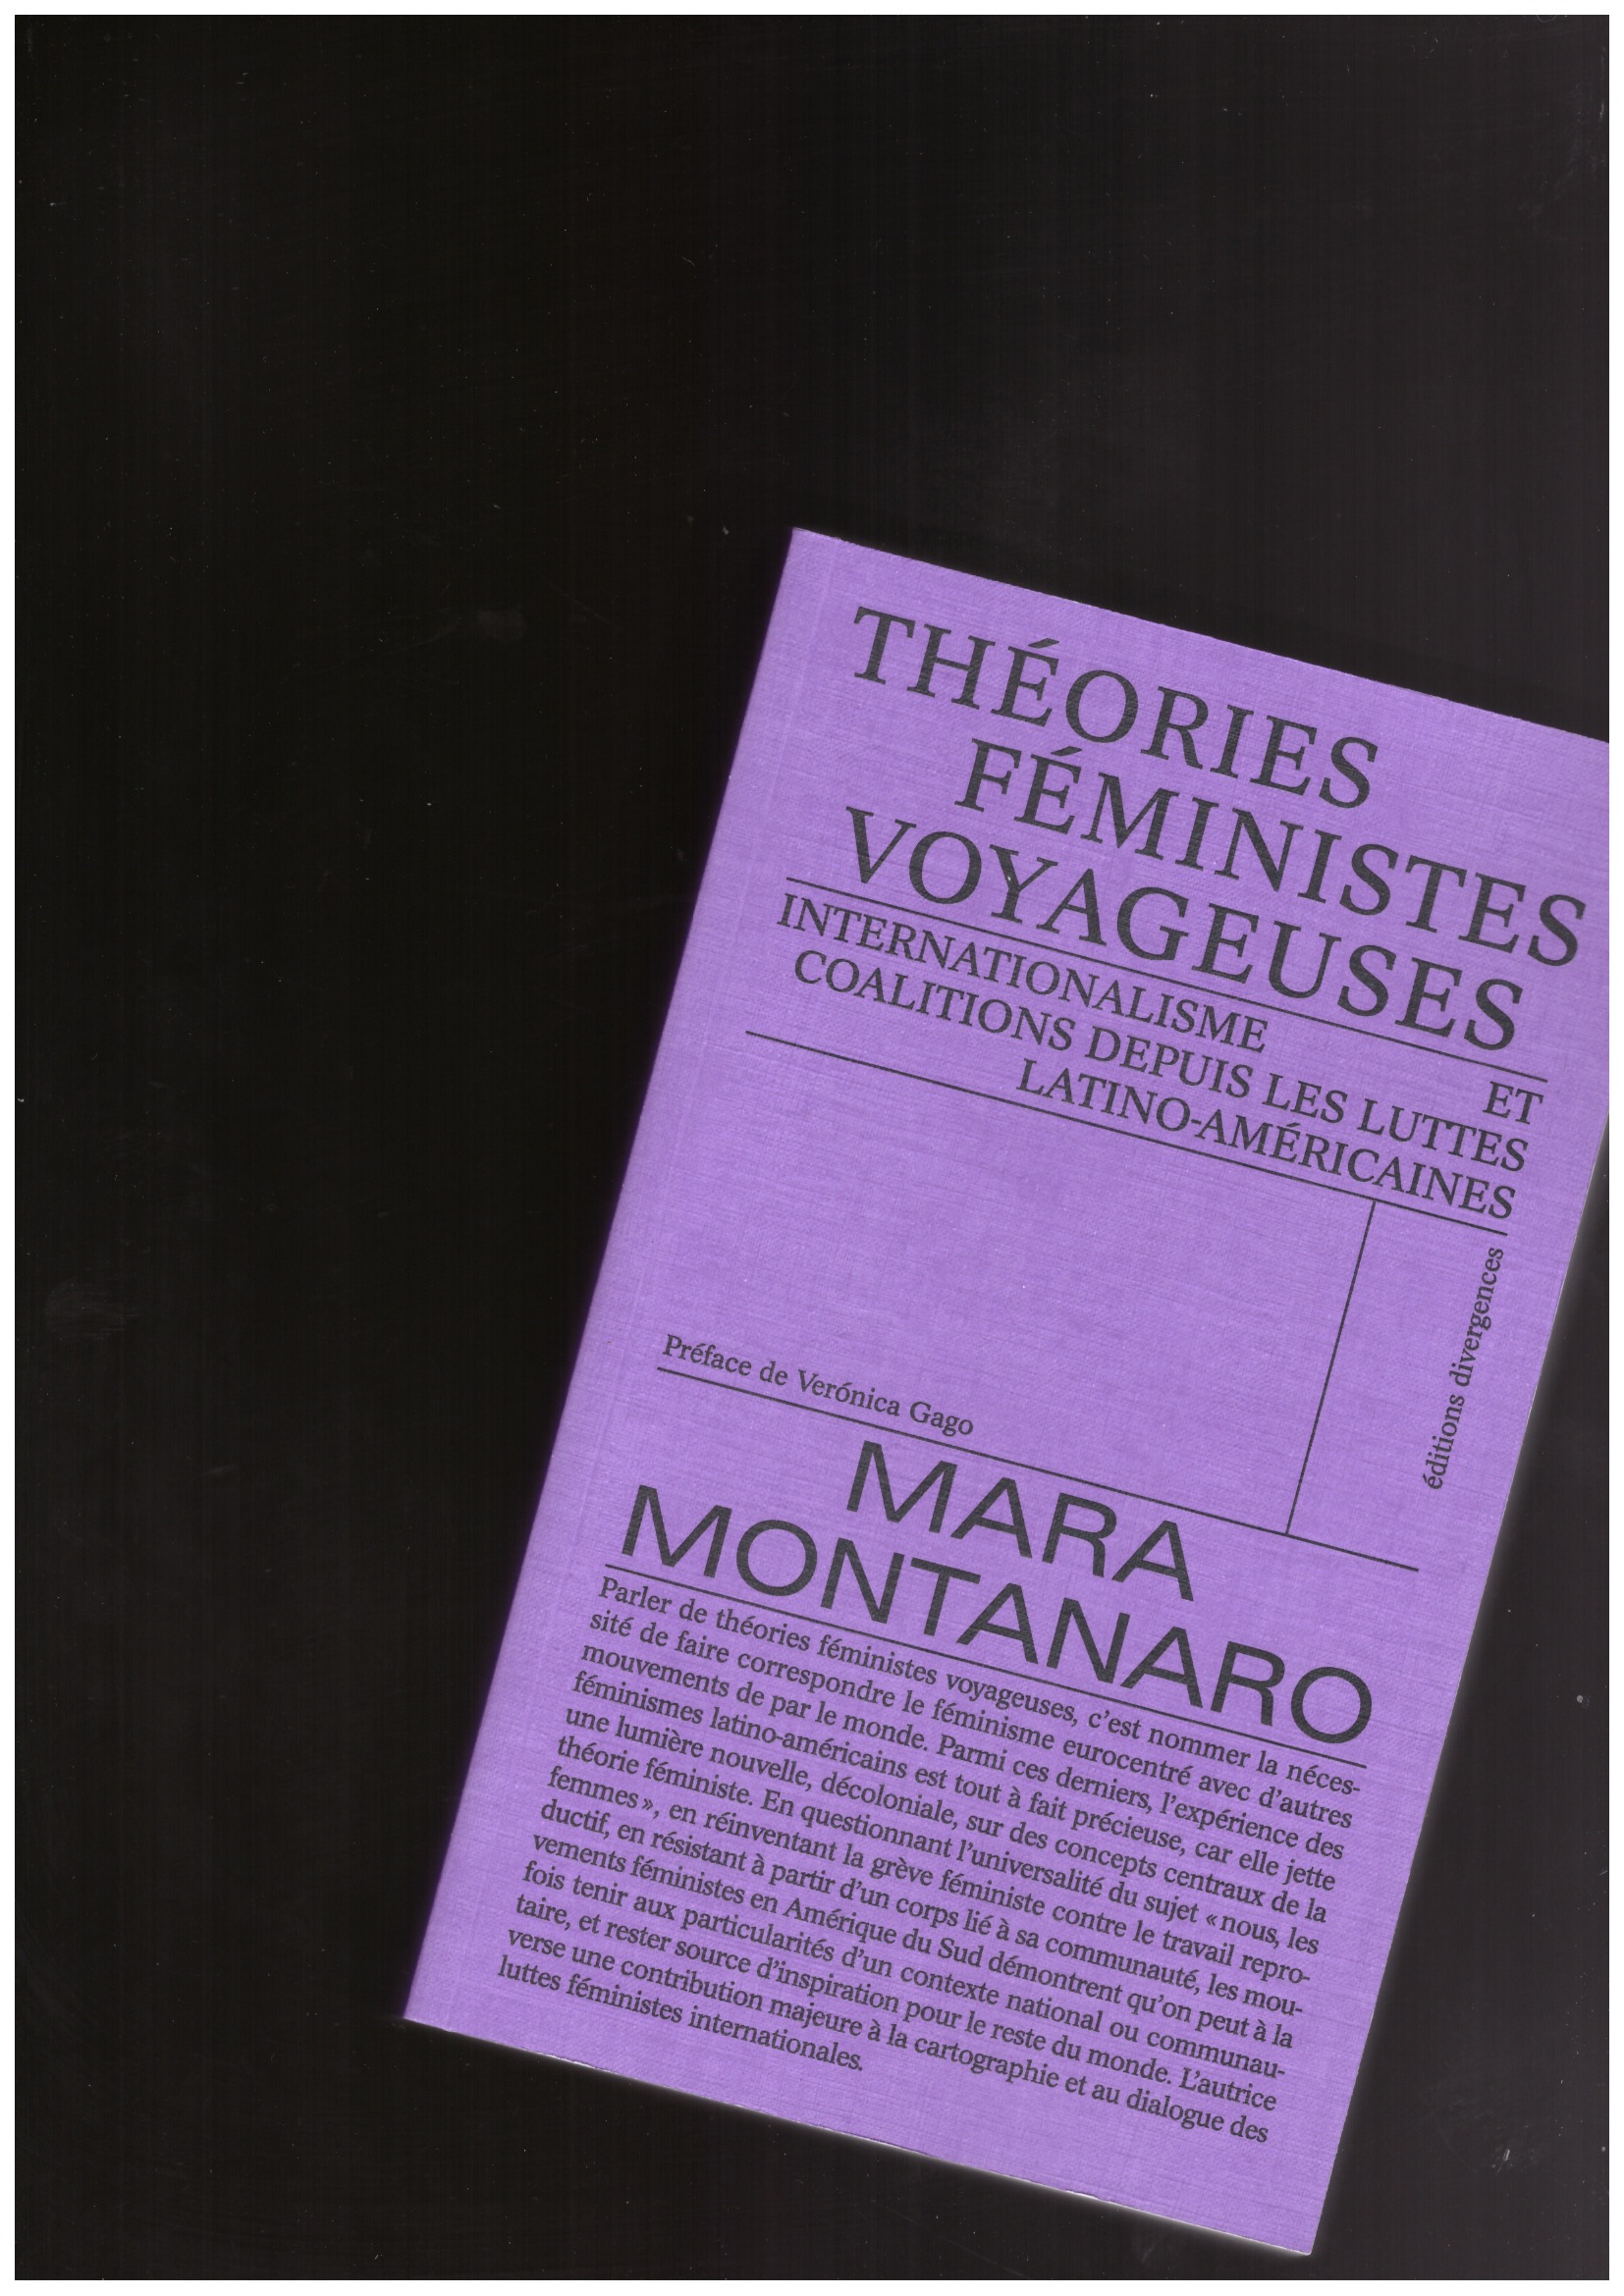 MONTANARO, Mara - Théories féministes voyageuses. Internationalisme et coalitions depuis les luttes latino-américaines